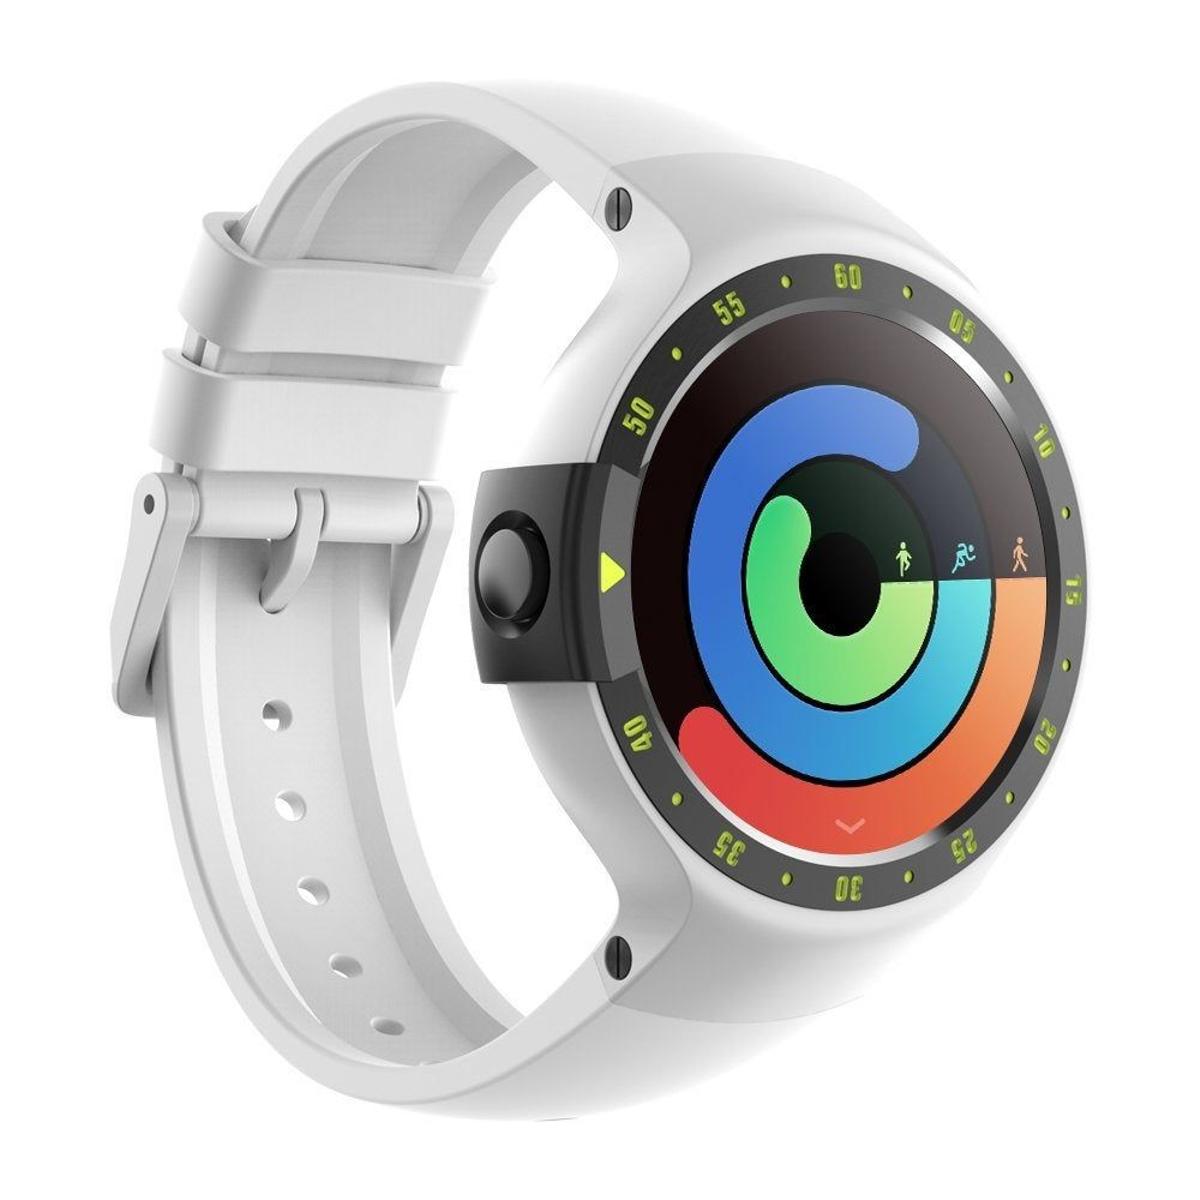 Ticwatch S Sport - Reloj inteligente con GPS, pantalla táctil OLED y resistente al agua, compatible con iOS y Android, sistema Android Wear 2.0, color blanco